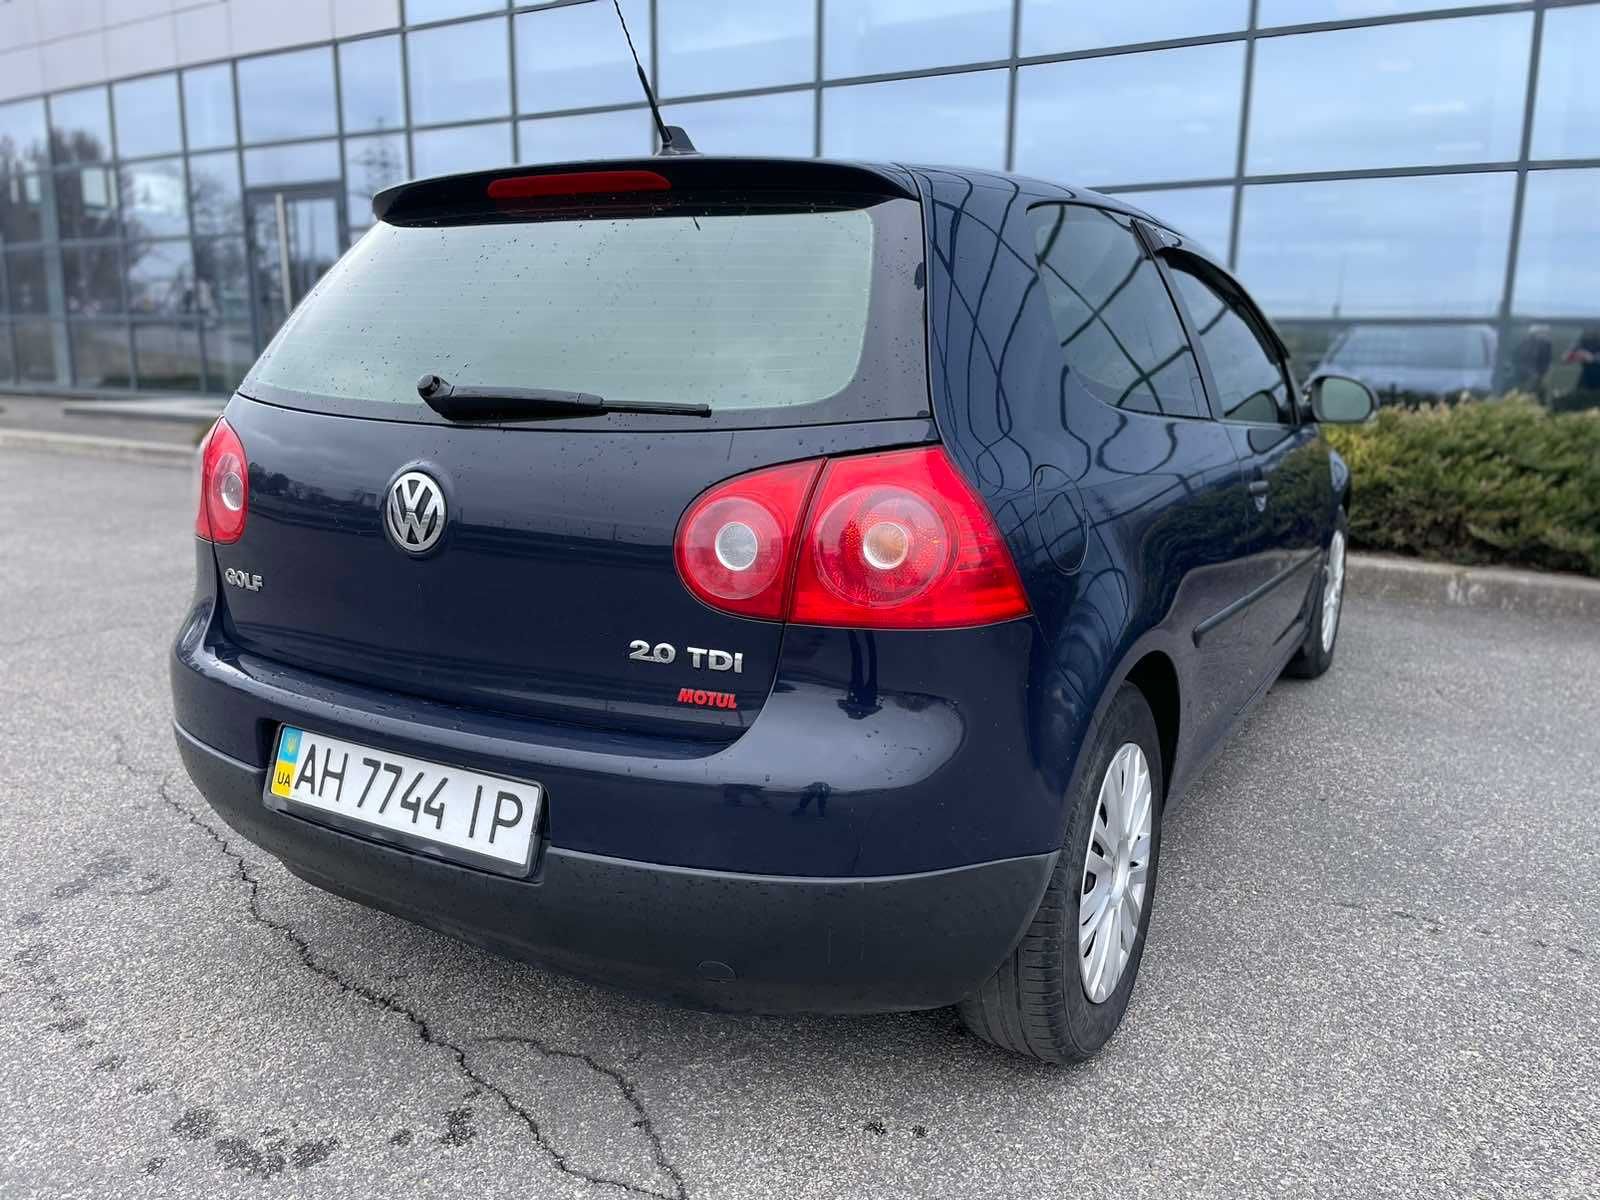 Продам Volkswagen Golf 2008г.,1,9 дизель/Родной окрас/Обмен/Рассрочка